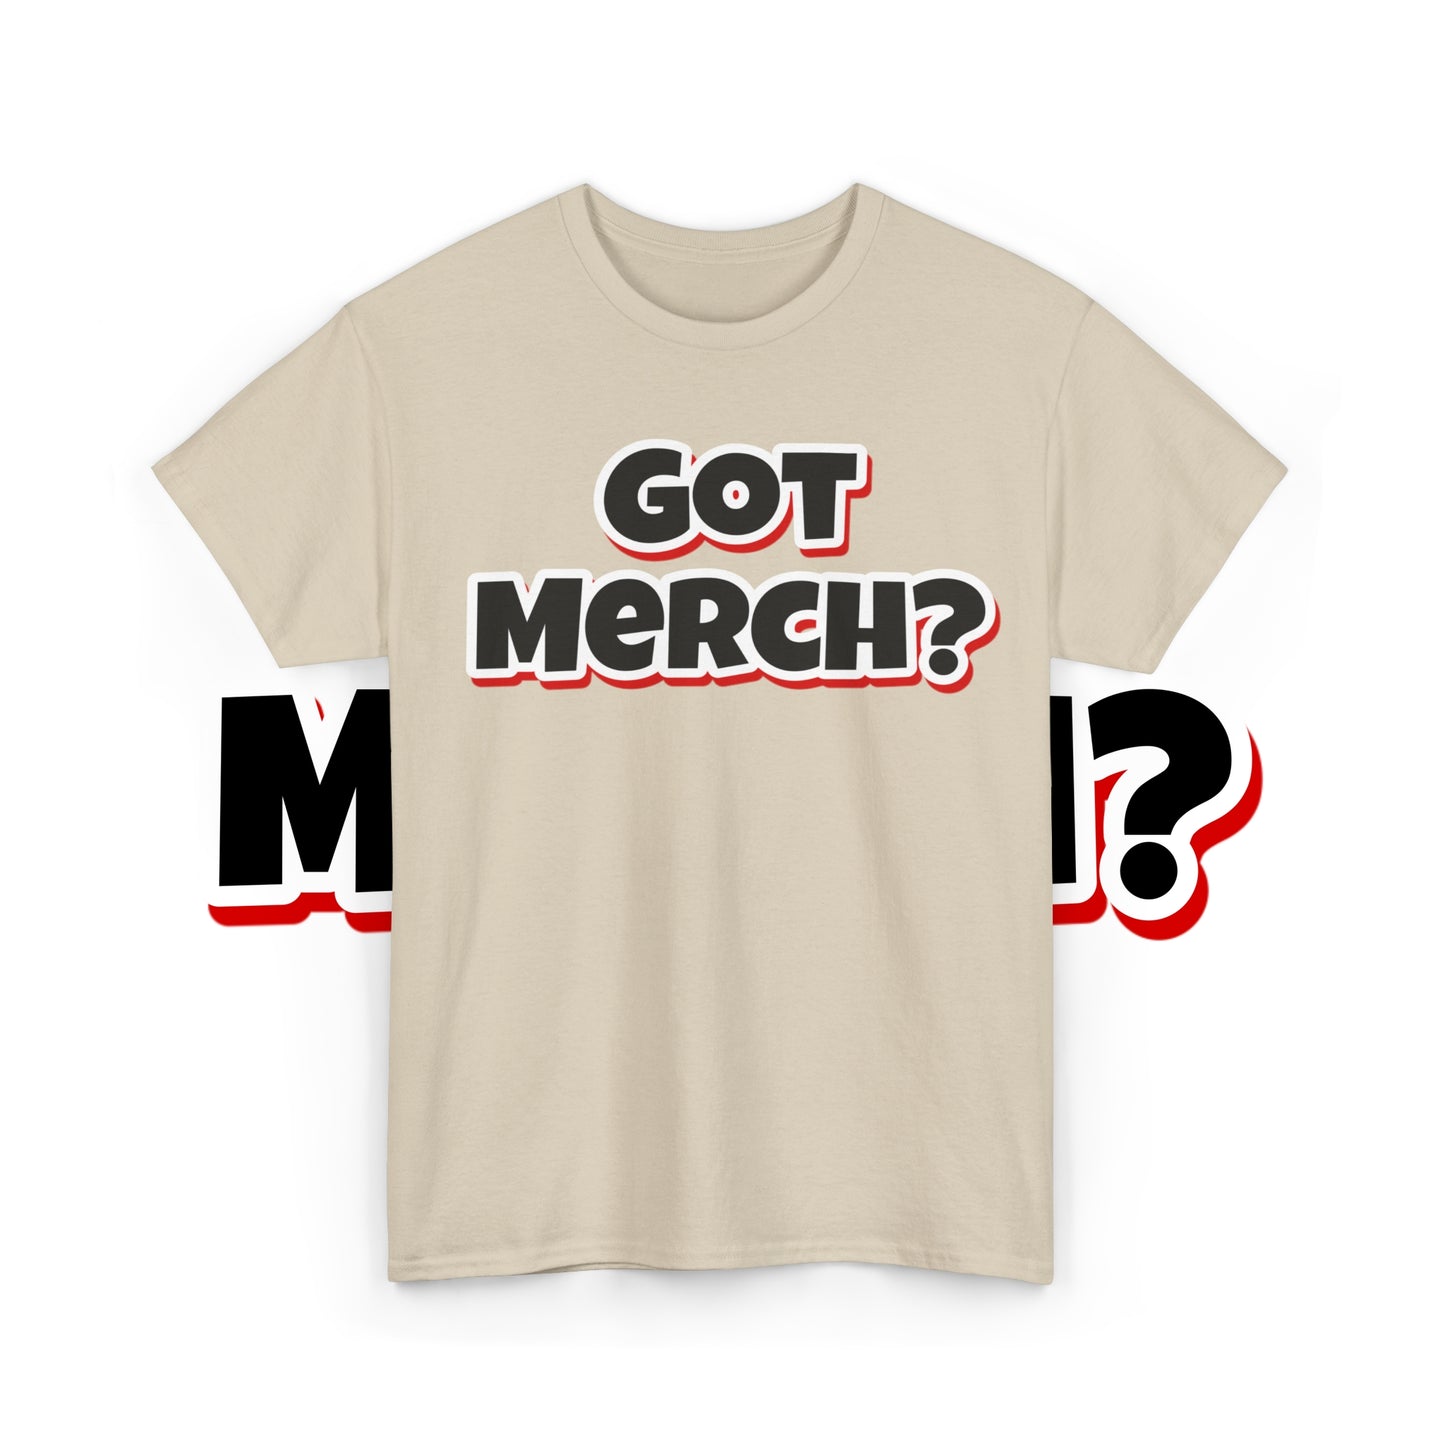 Got Merch?